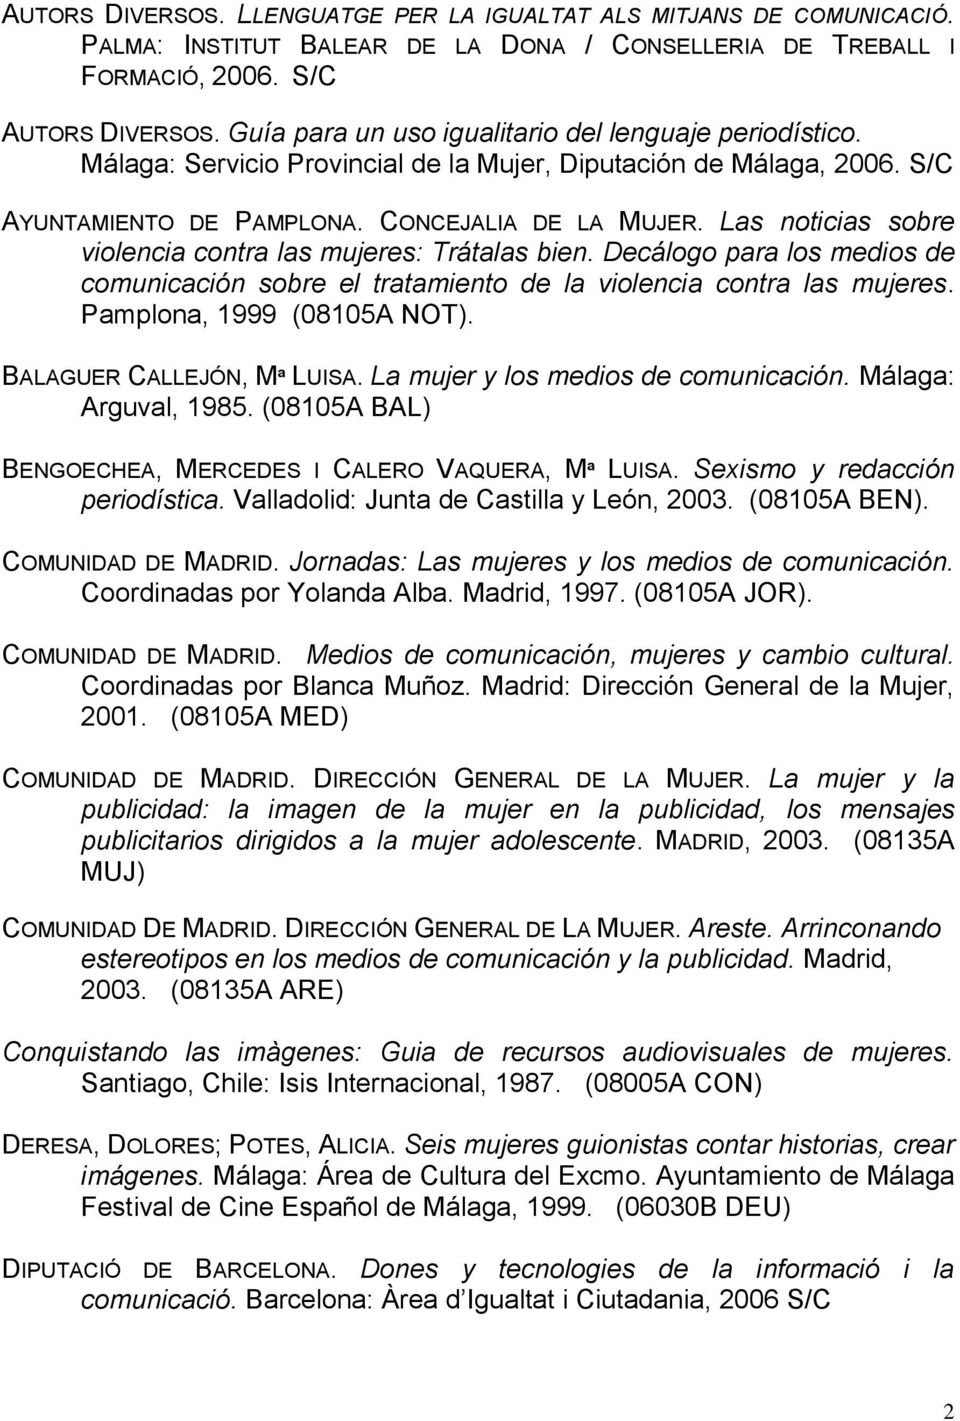 Las noticias sobre violencia contra las mujeres: Trátalas bien. Decálogo para los medios de comunicación sobre el tratamiento de la violencia contra las mujeres. Pamplona, 1999 (08105A NOT).